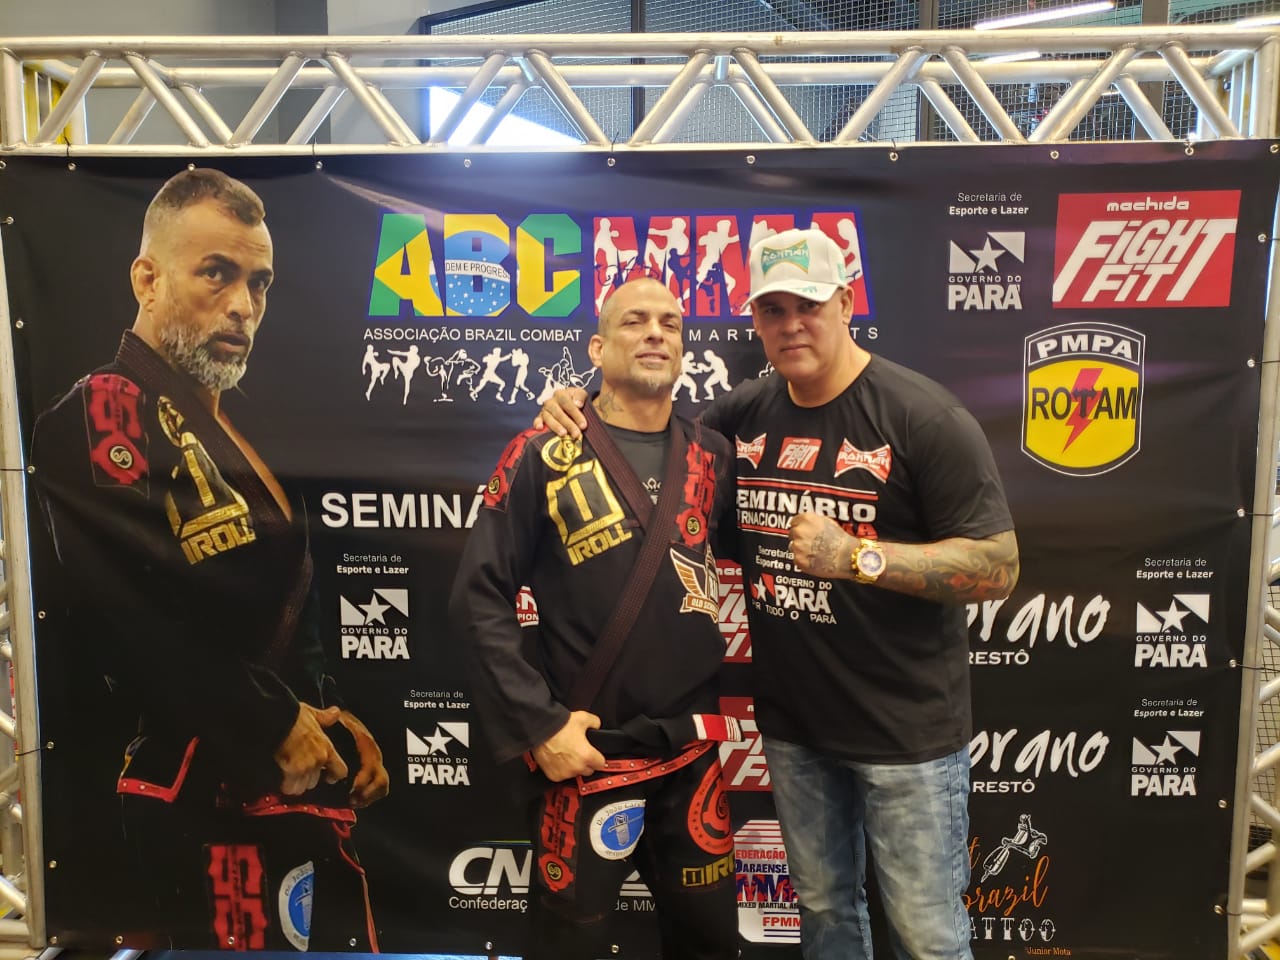 Organização e Marcelo Dourado celebram sucesso do Seminário International de MMA em Belém do Pará; confira